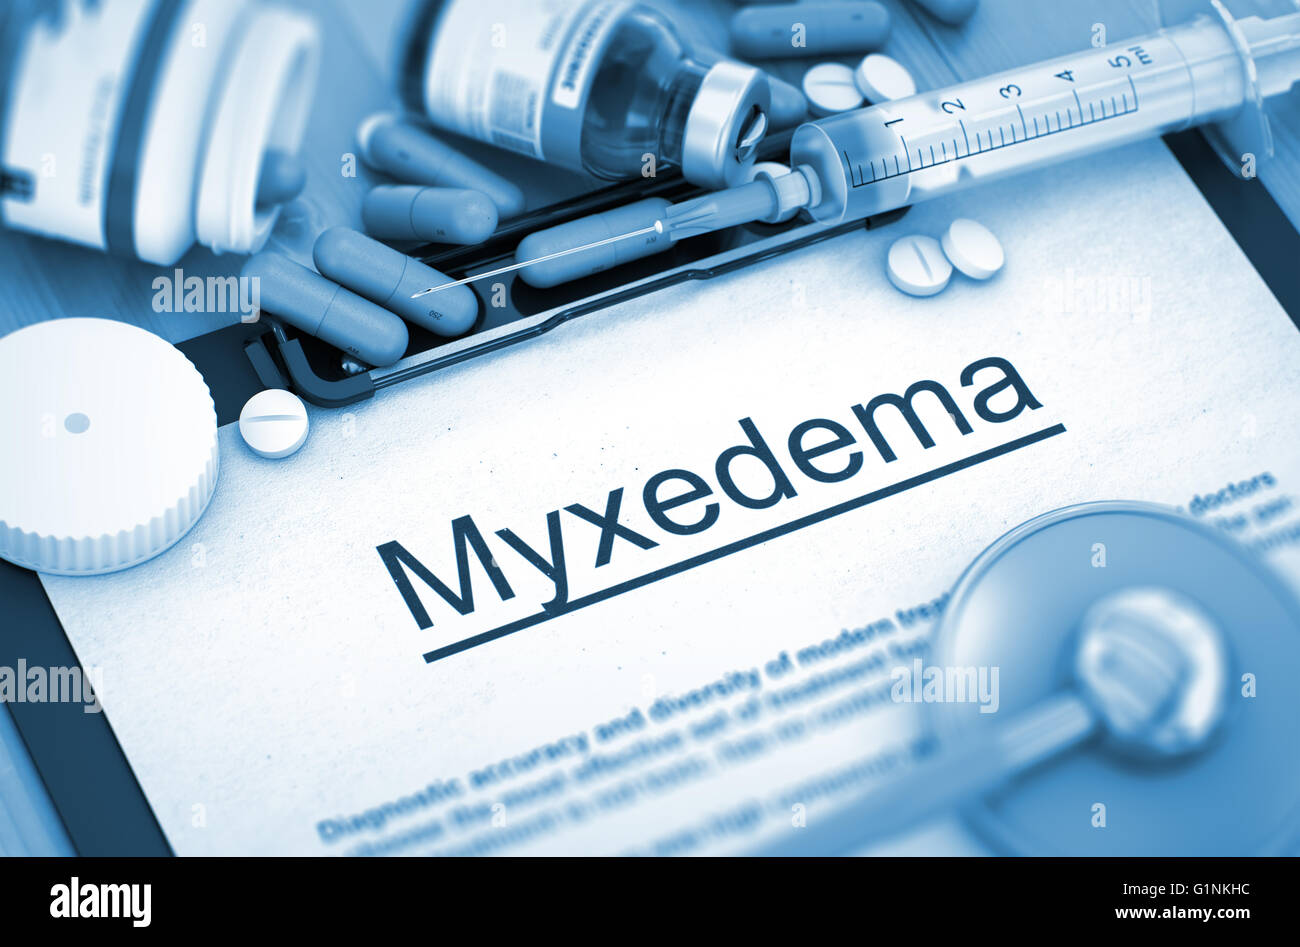 Myxedema Diagnosis. Medical Concept. Composition of Medicaments. Stock Photo